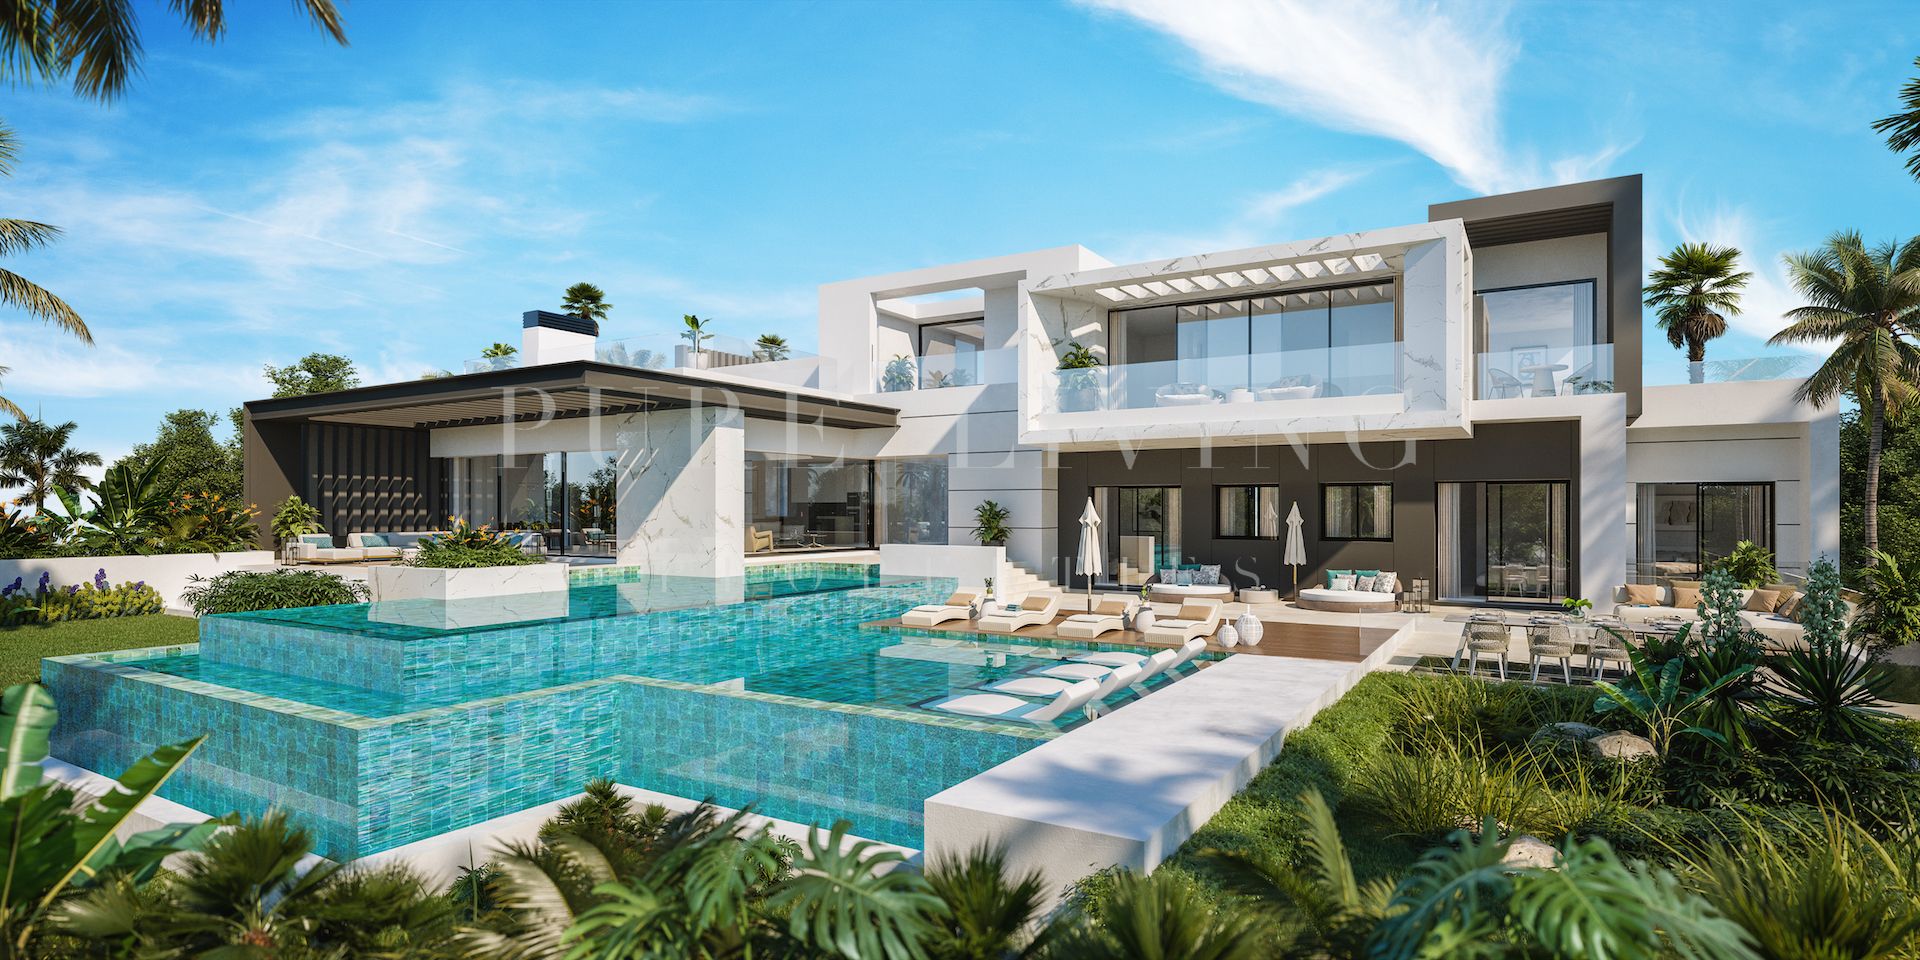 Luxury seven bedroom villa with amazing views in Paraiso Alto